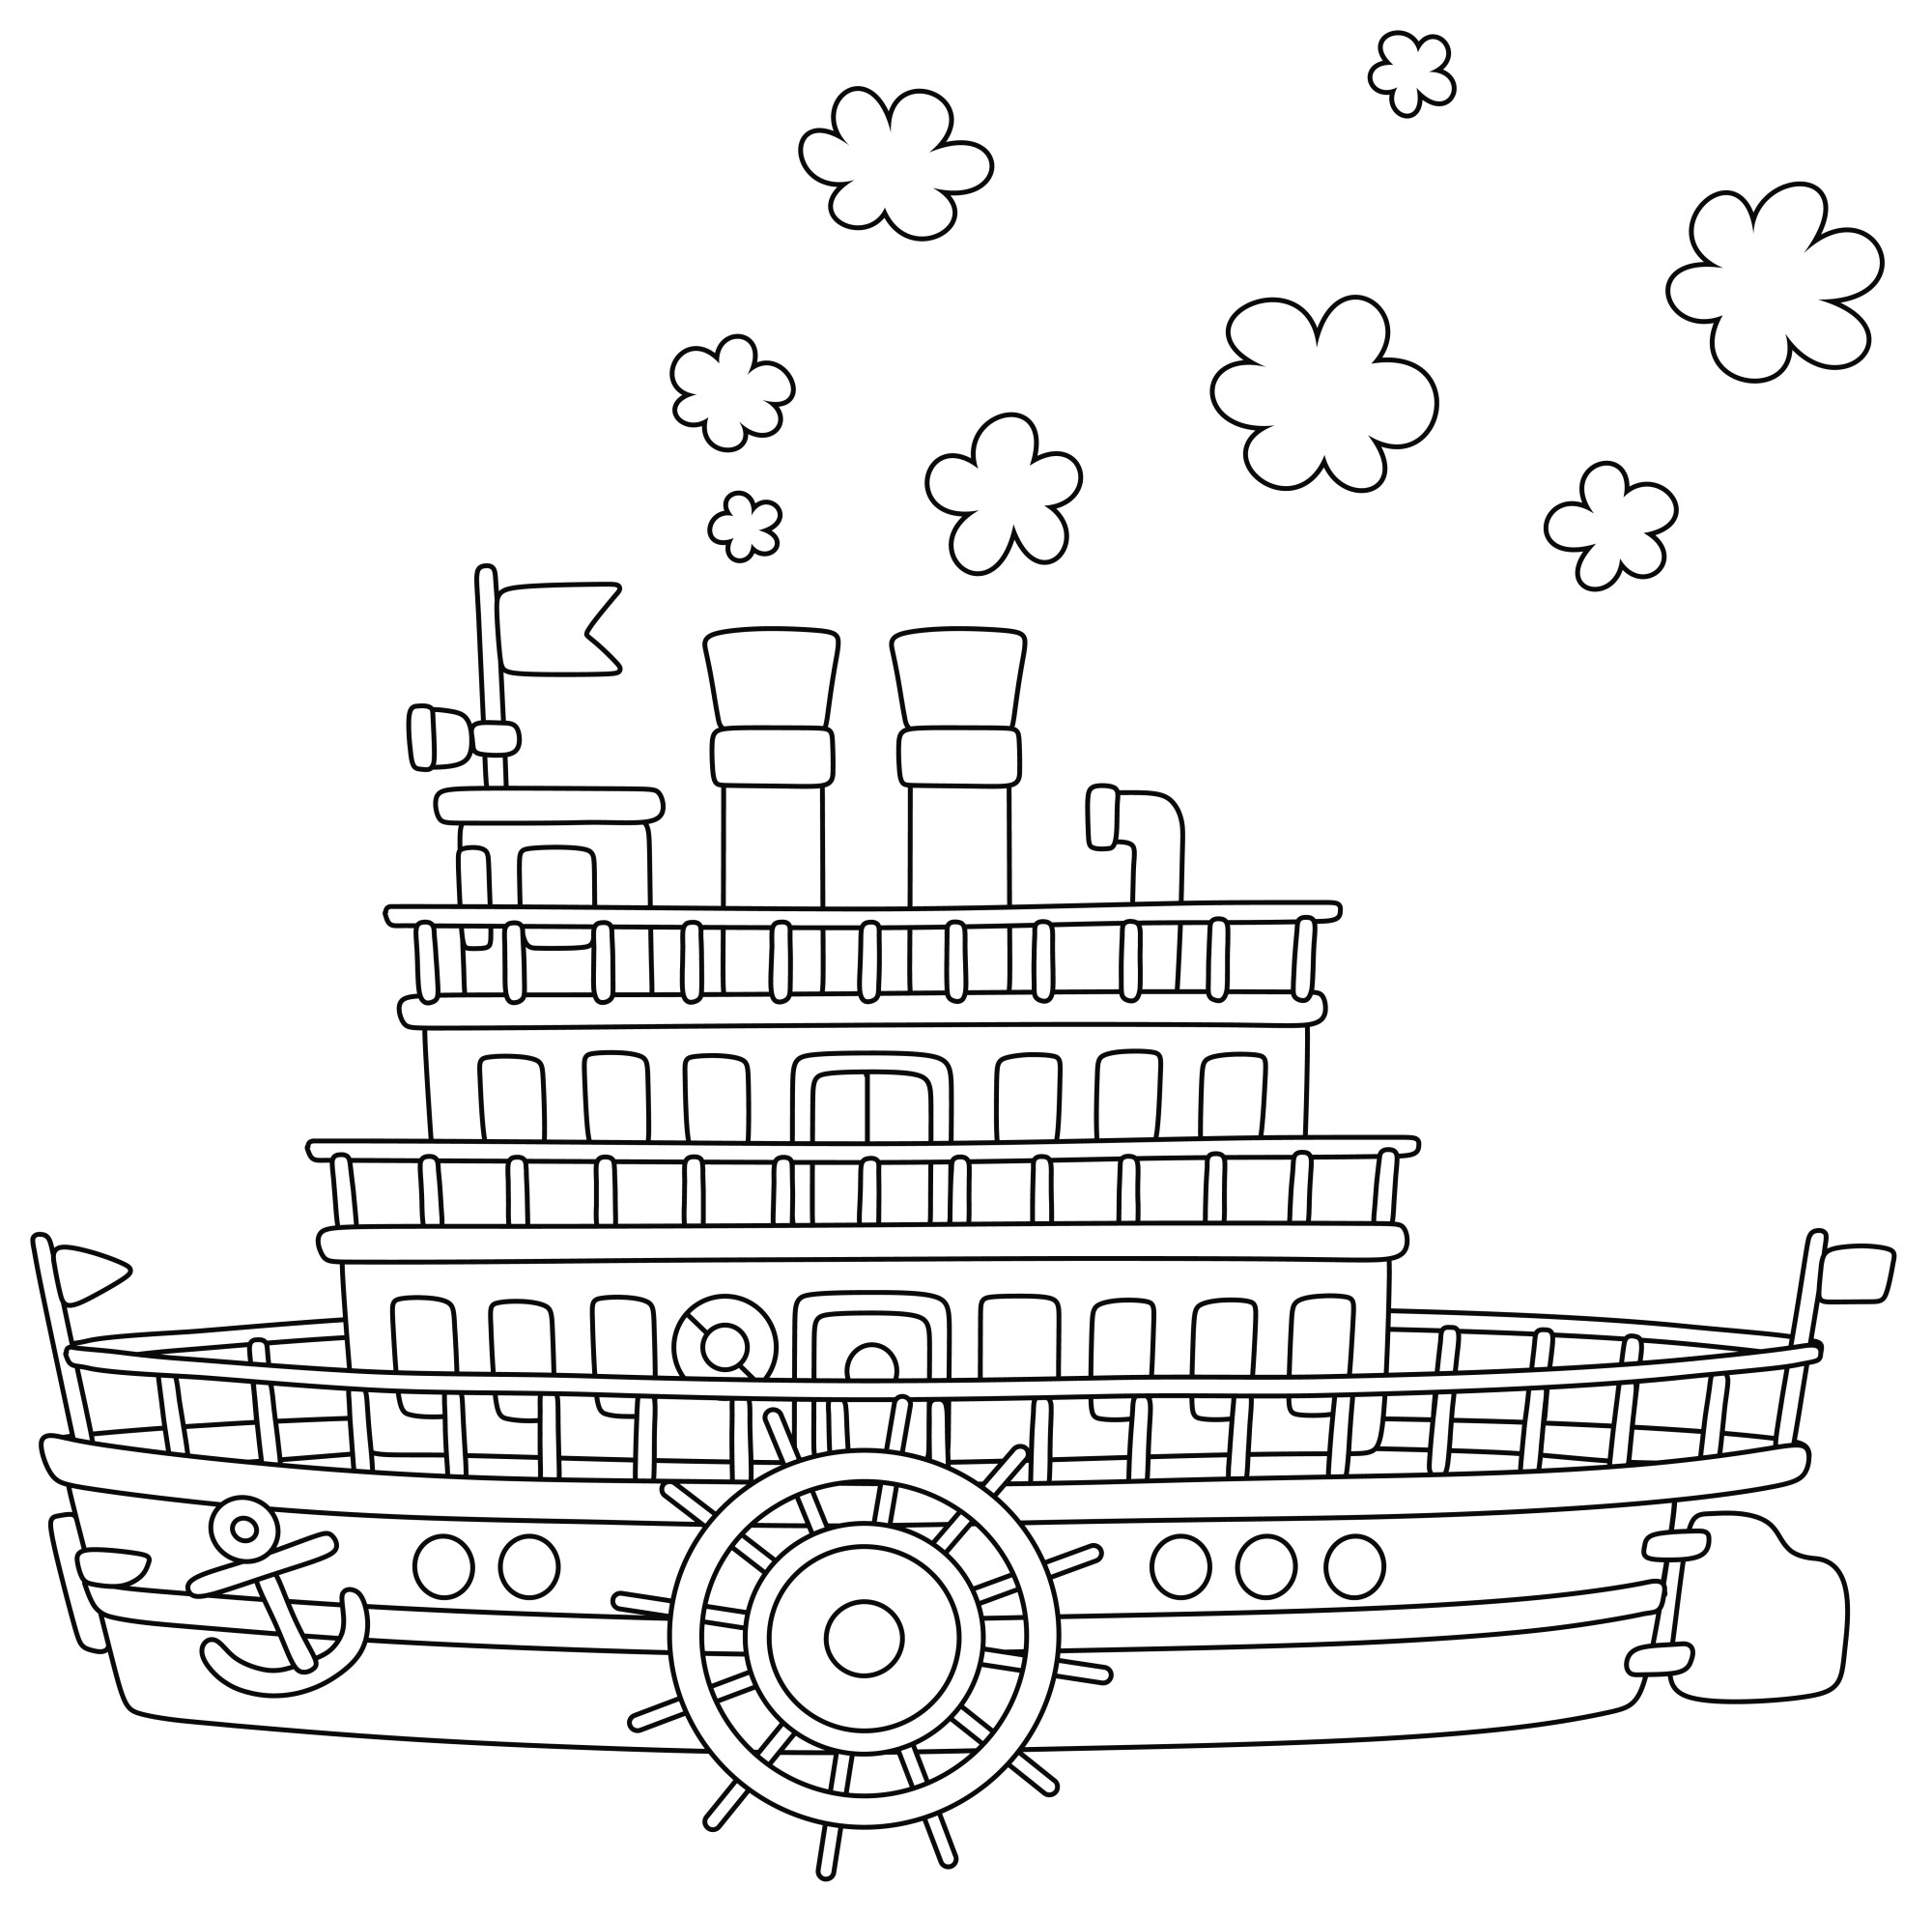 Раскраска для детей: старый корабль пароход с большим колесом